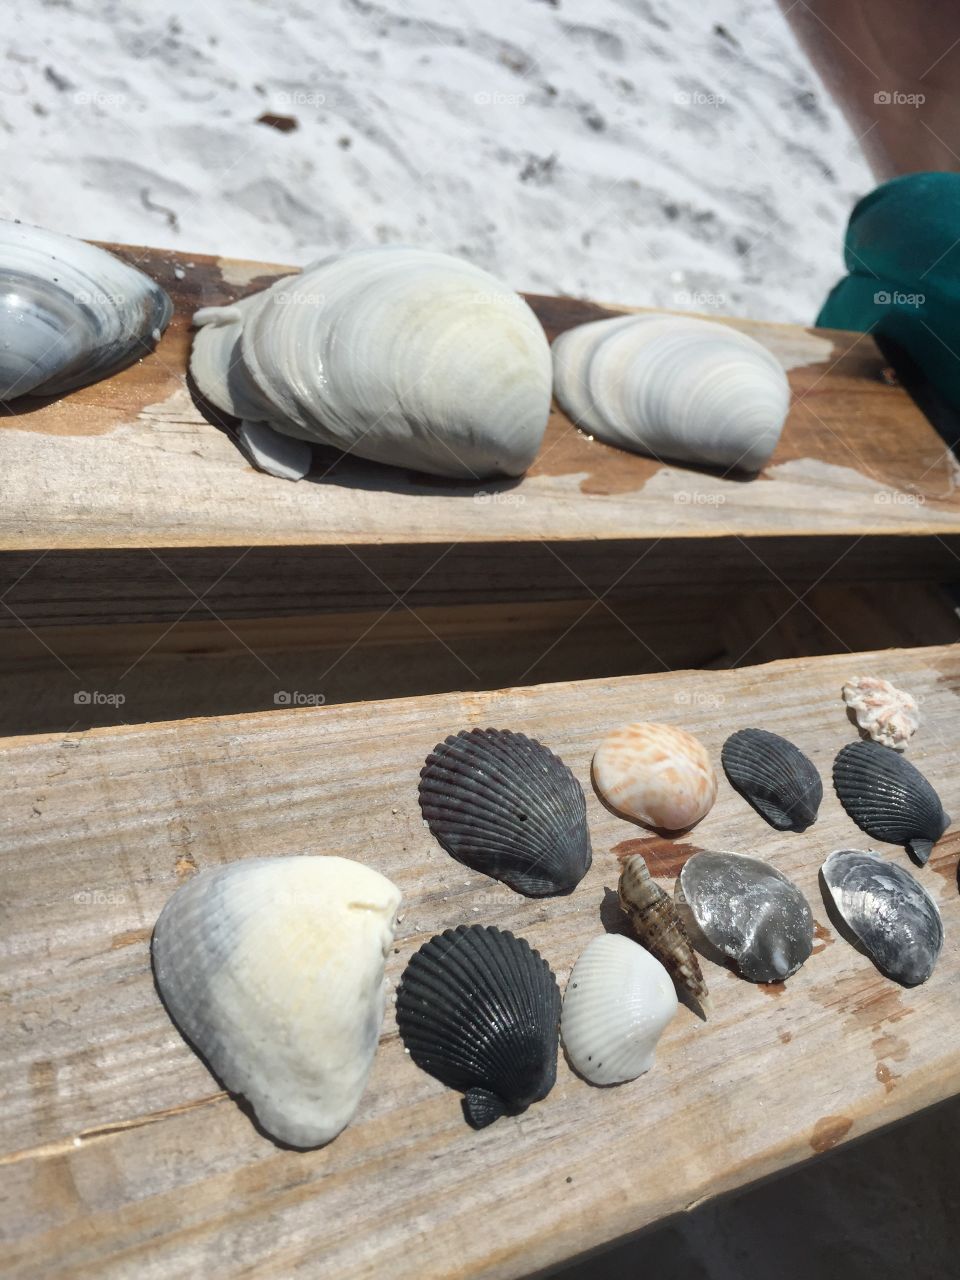 Shells from Sarasota Florida 